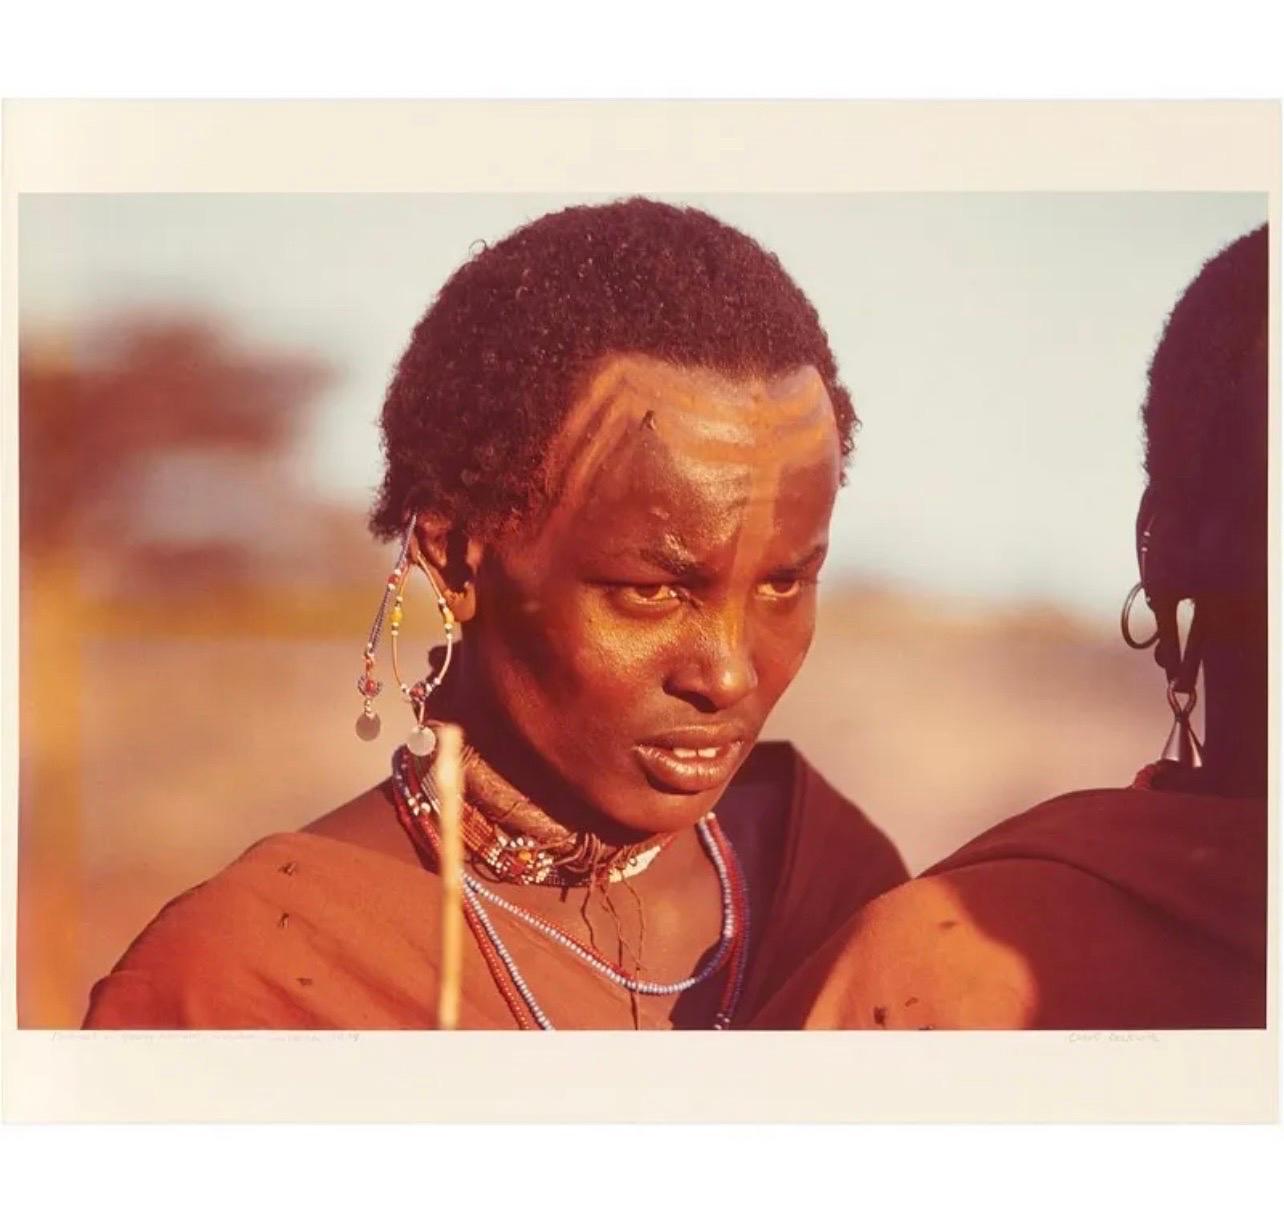 Seltene Vintage-Farb-C-Druck-Fotografie, afrikanischer Maasai-Krieger, Chromogenes Foto  (Zeitgenössisch), Photograph, von Carol Beckwith